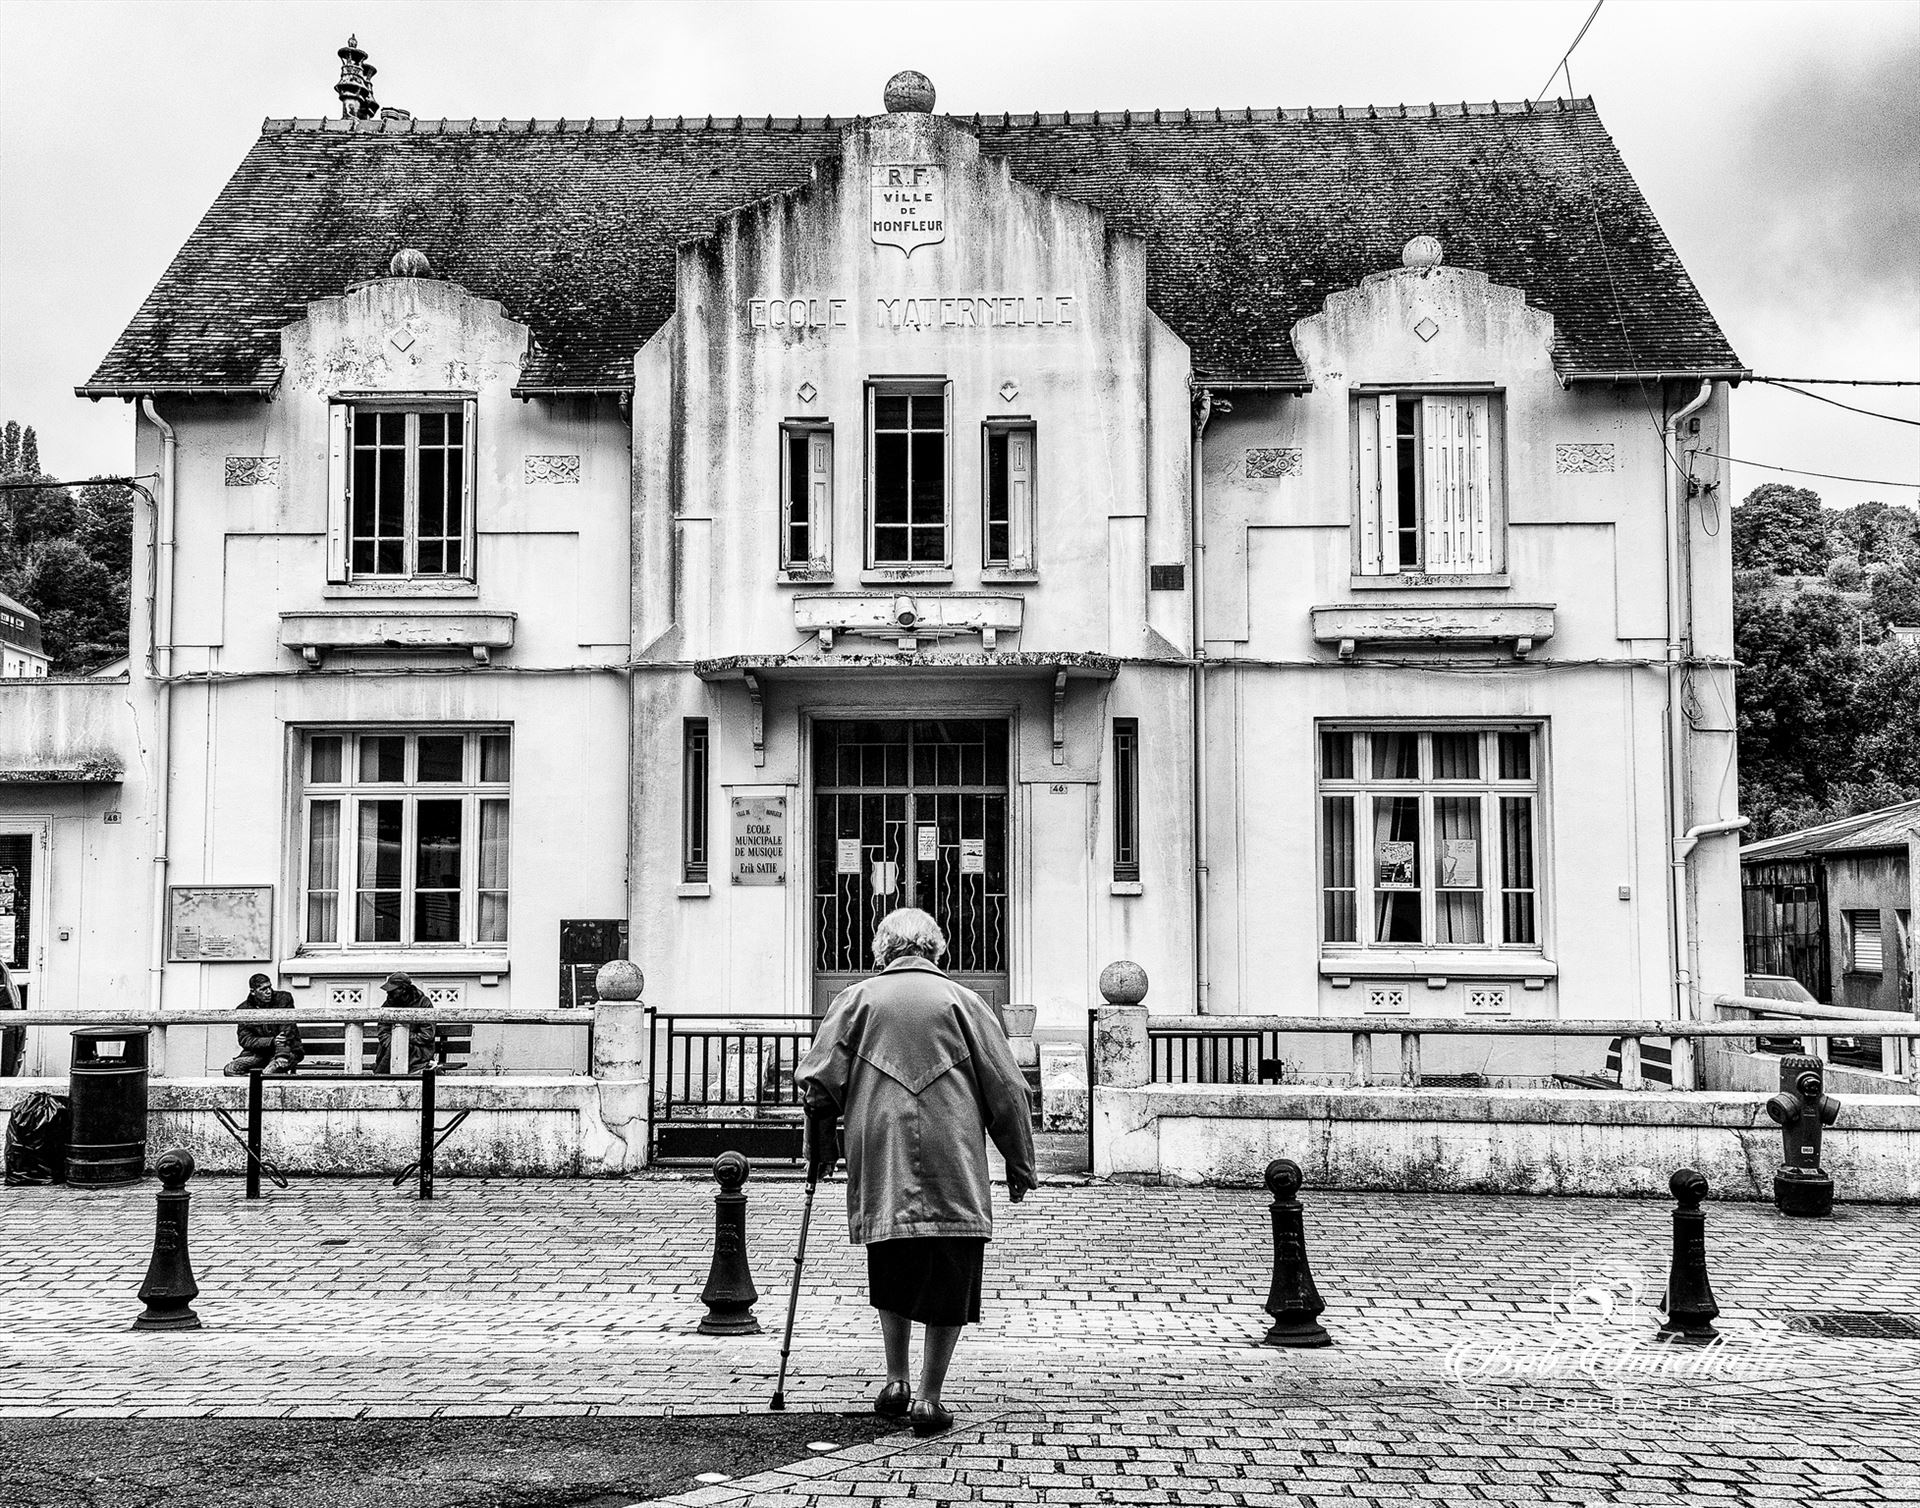 Old Building In Honfleur - Honfleur France 2014 Winner Of 5 Awards by Buckmaster